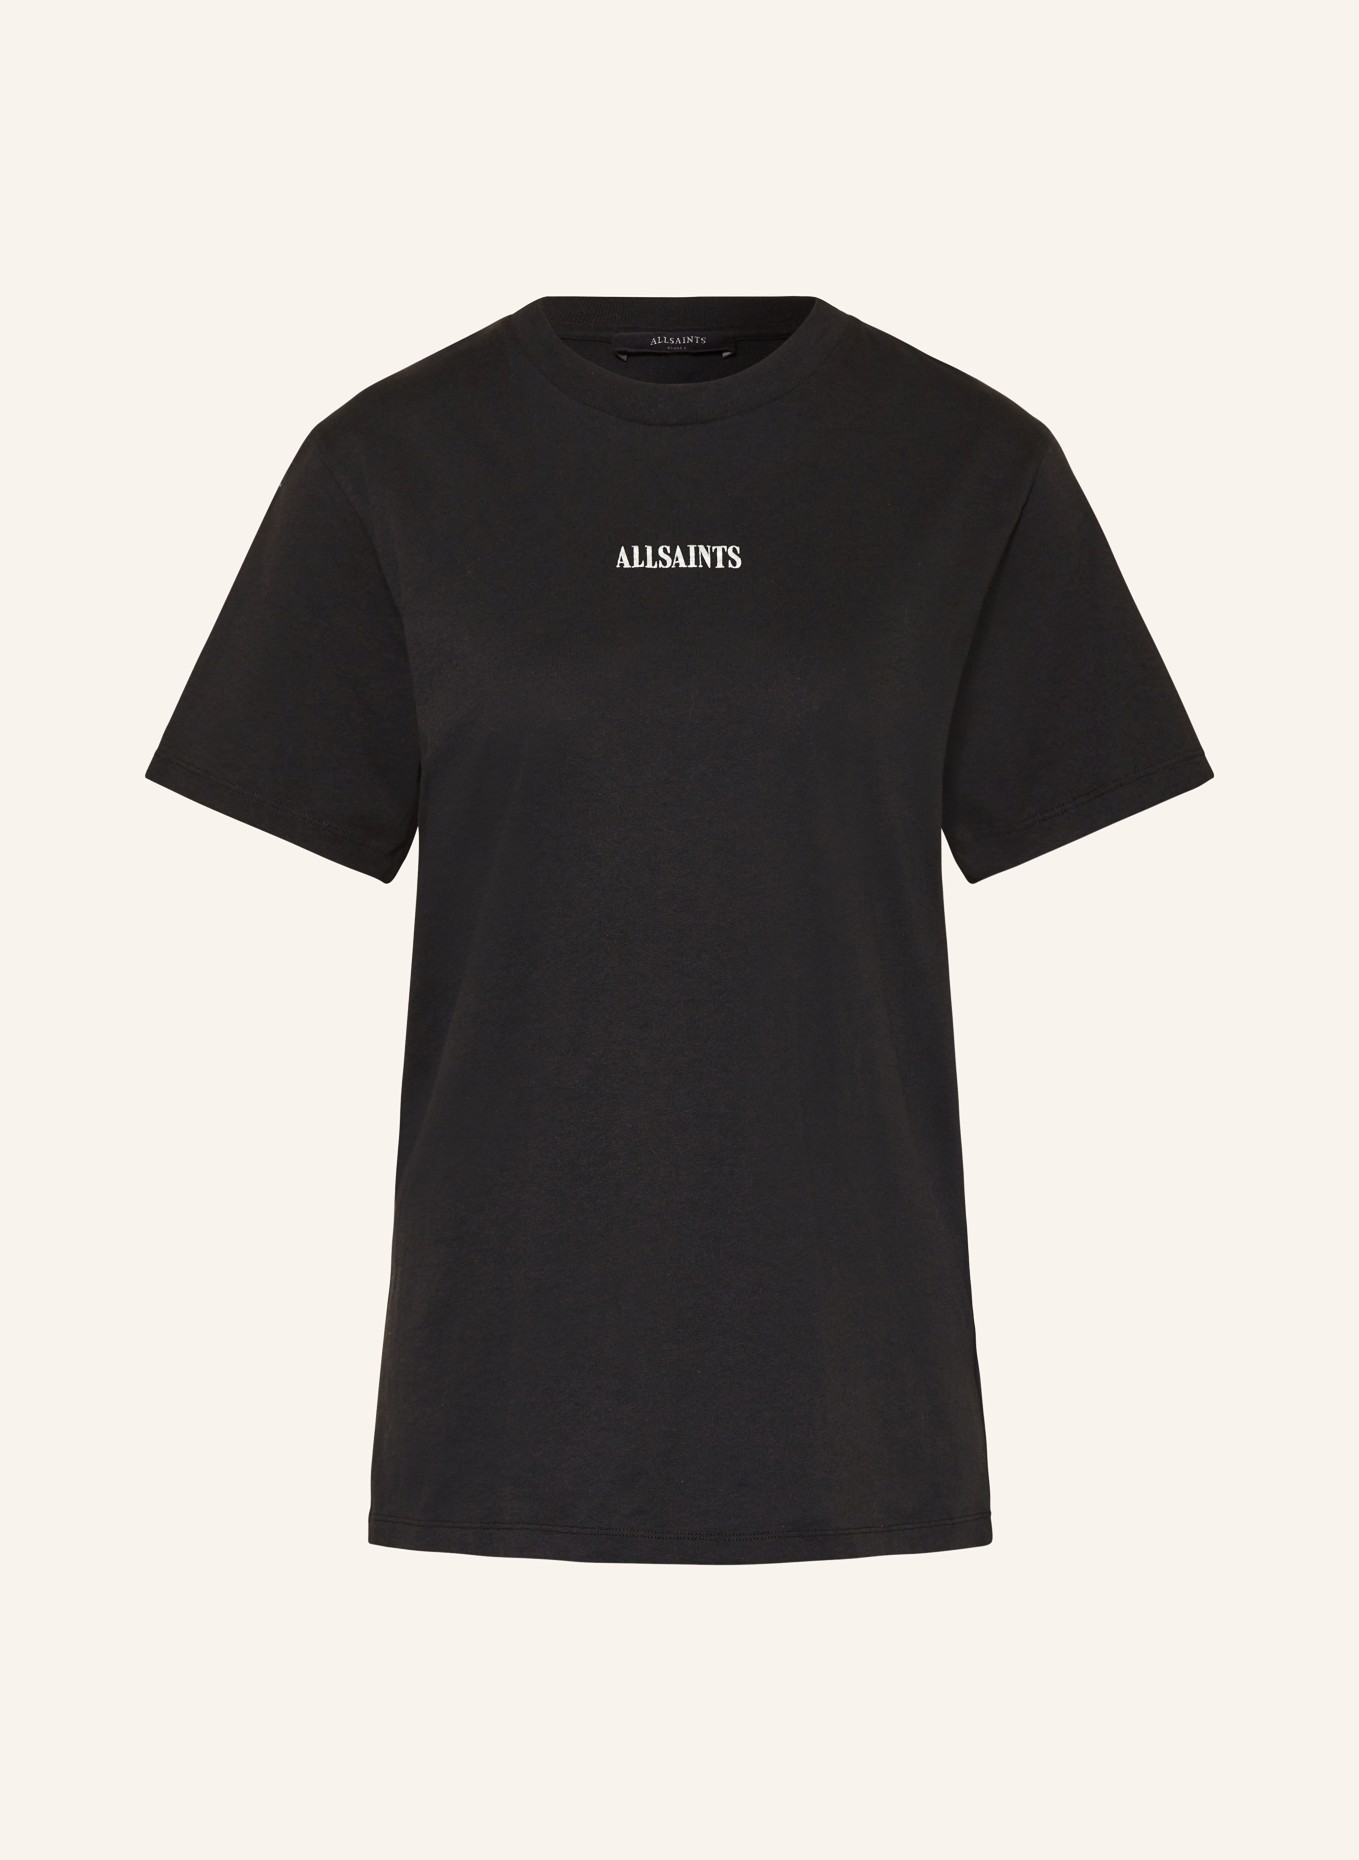 ALLSAINTS T-shirt FORTUNA, Kolor: CZARNY/ SREBRNY/ SZARY (Obrazek 1)